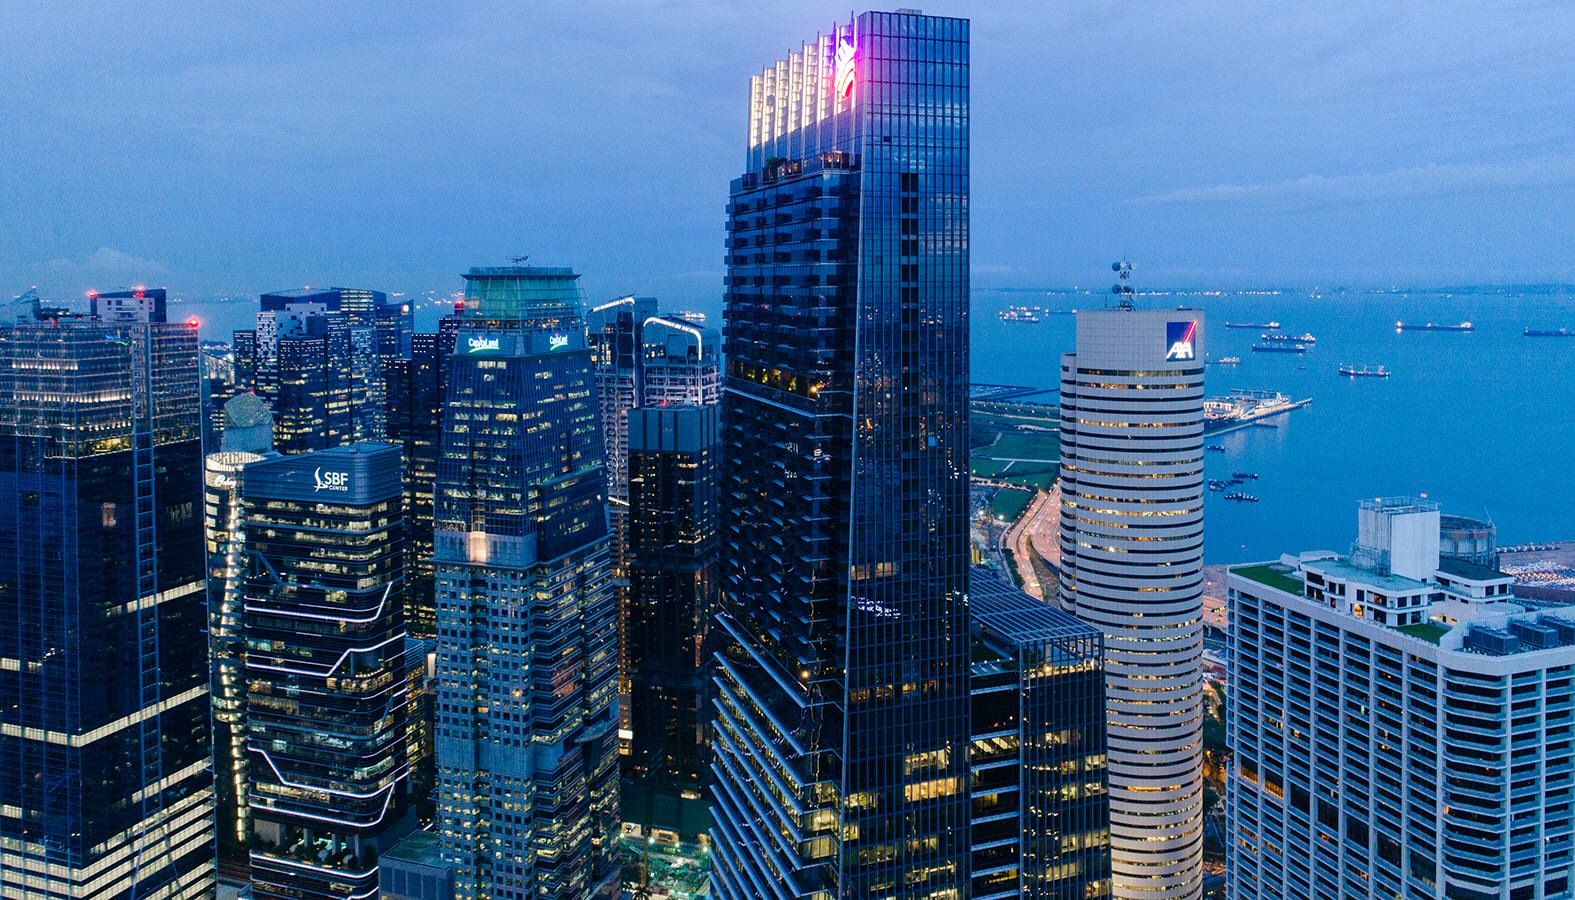 Kiến trúc tòa nhà Guoco Tower - Tòa nhà cao nhất Singapore